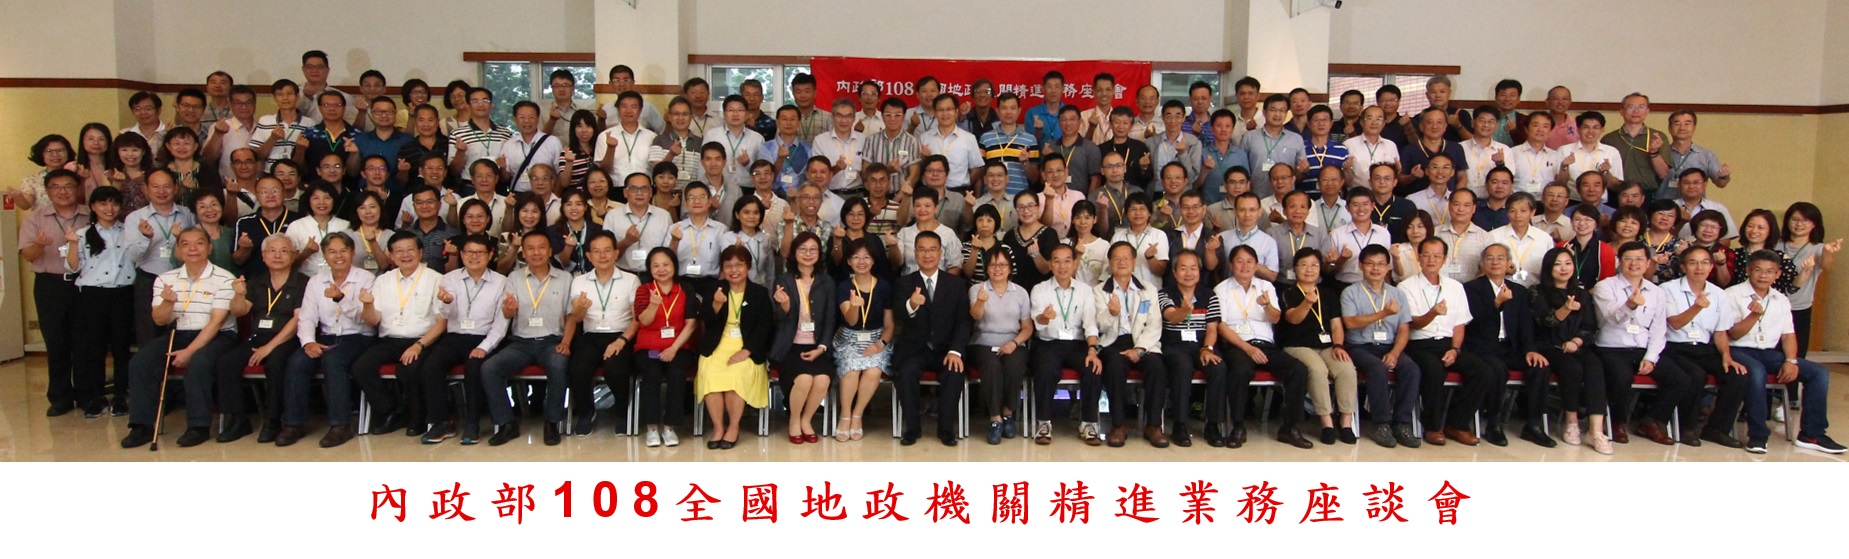 內政部部長徐國勇(前排左12))與全國各地政機關首長合影